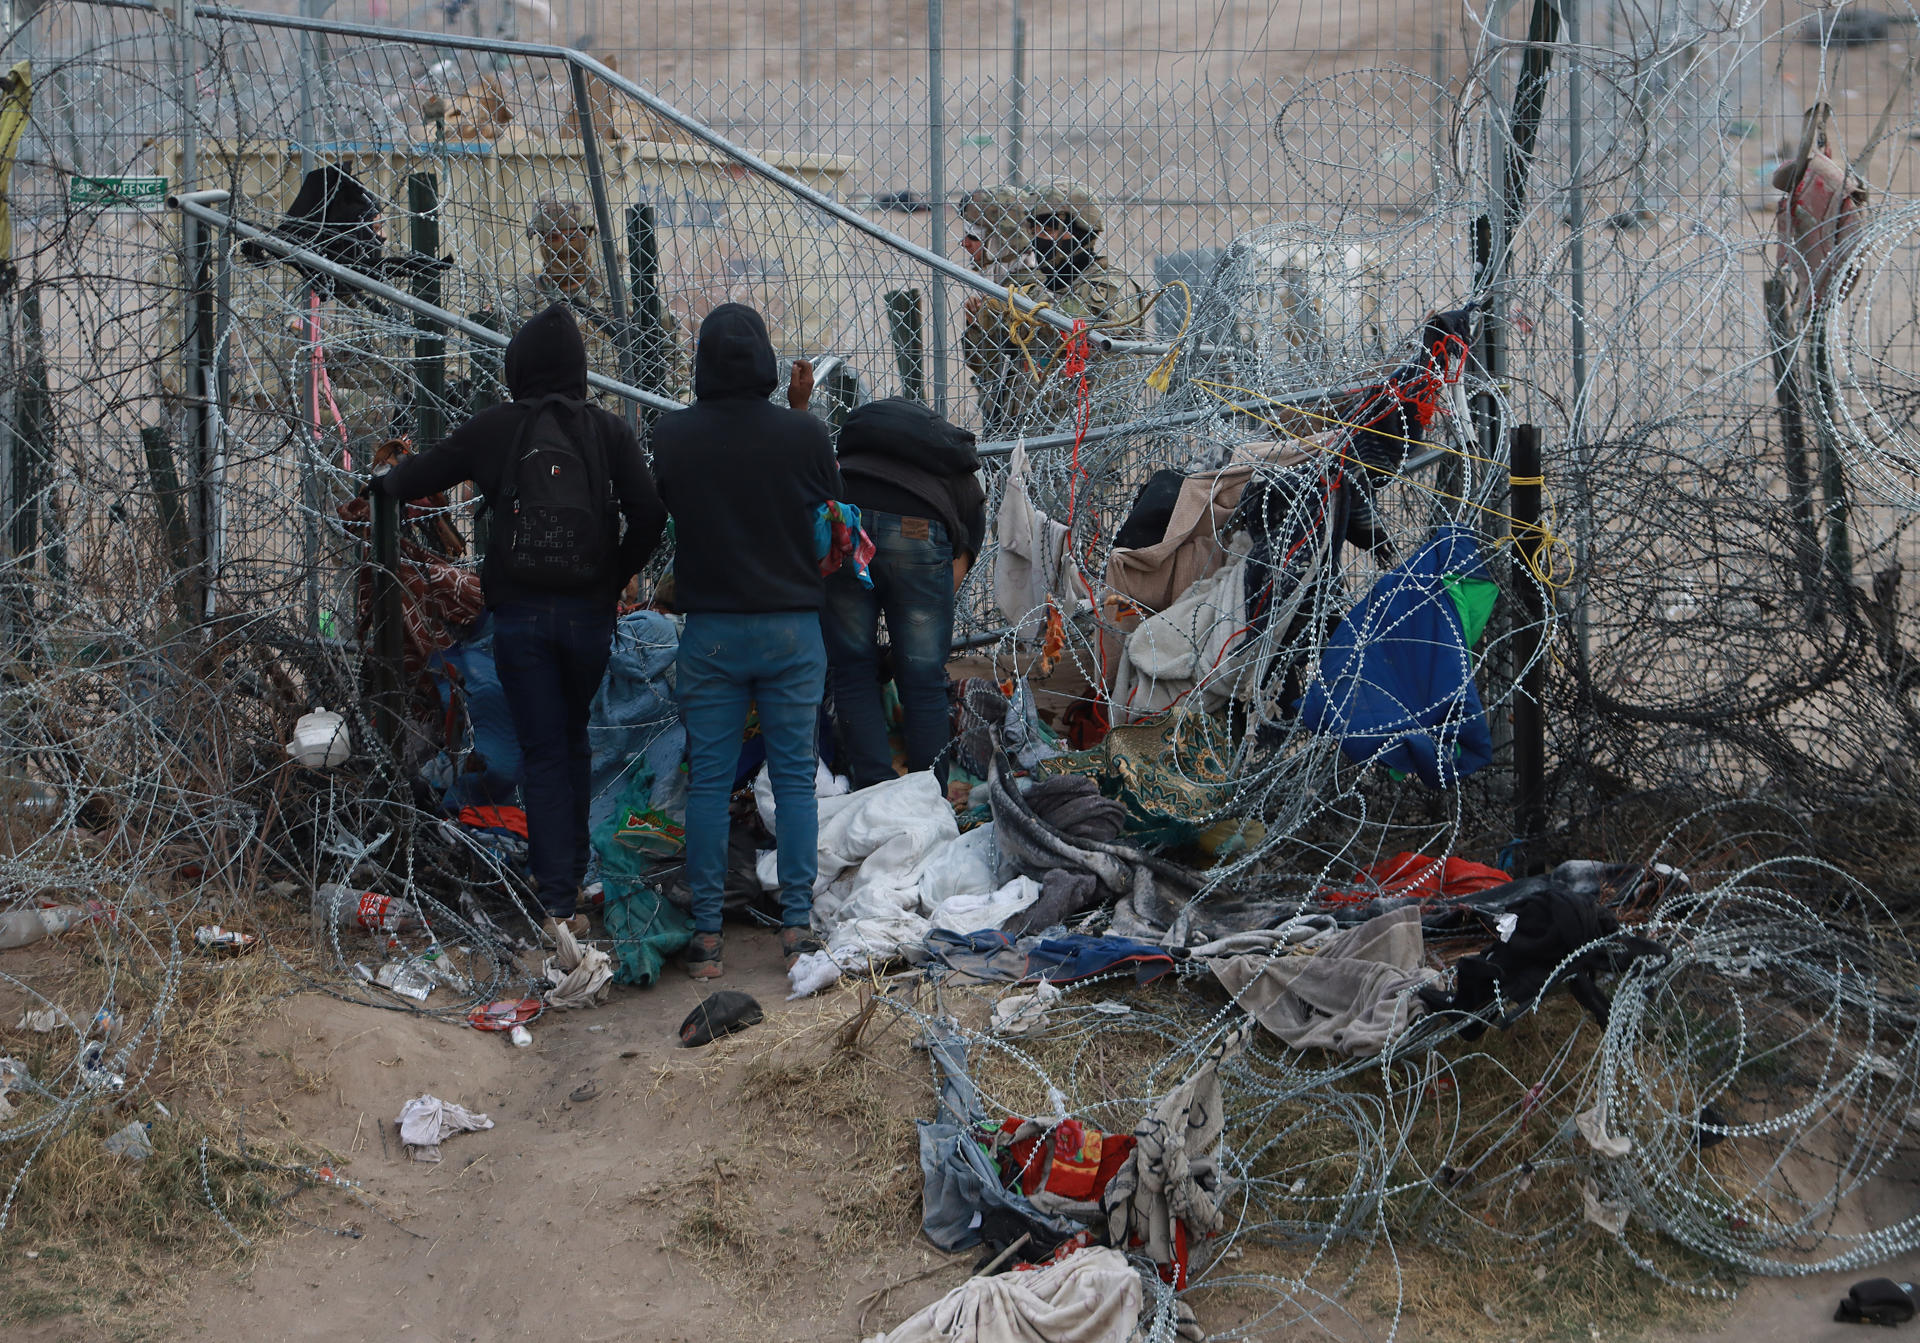 Migrantes intentan cruzar la frontera México-EE.UU. en medio de vigilancia militar